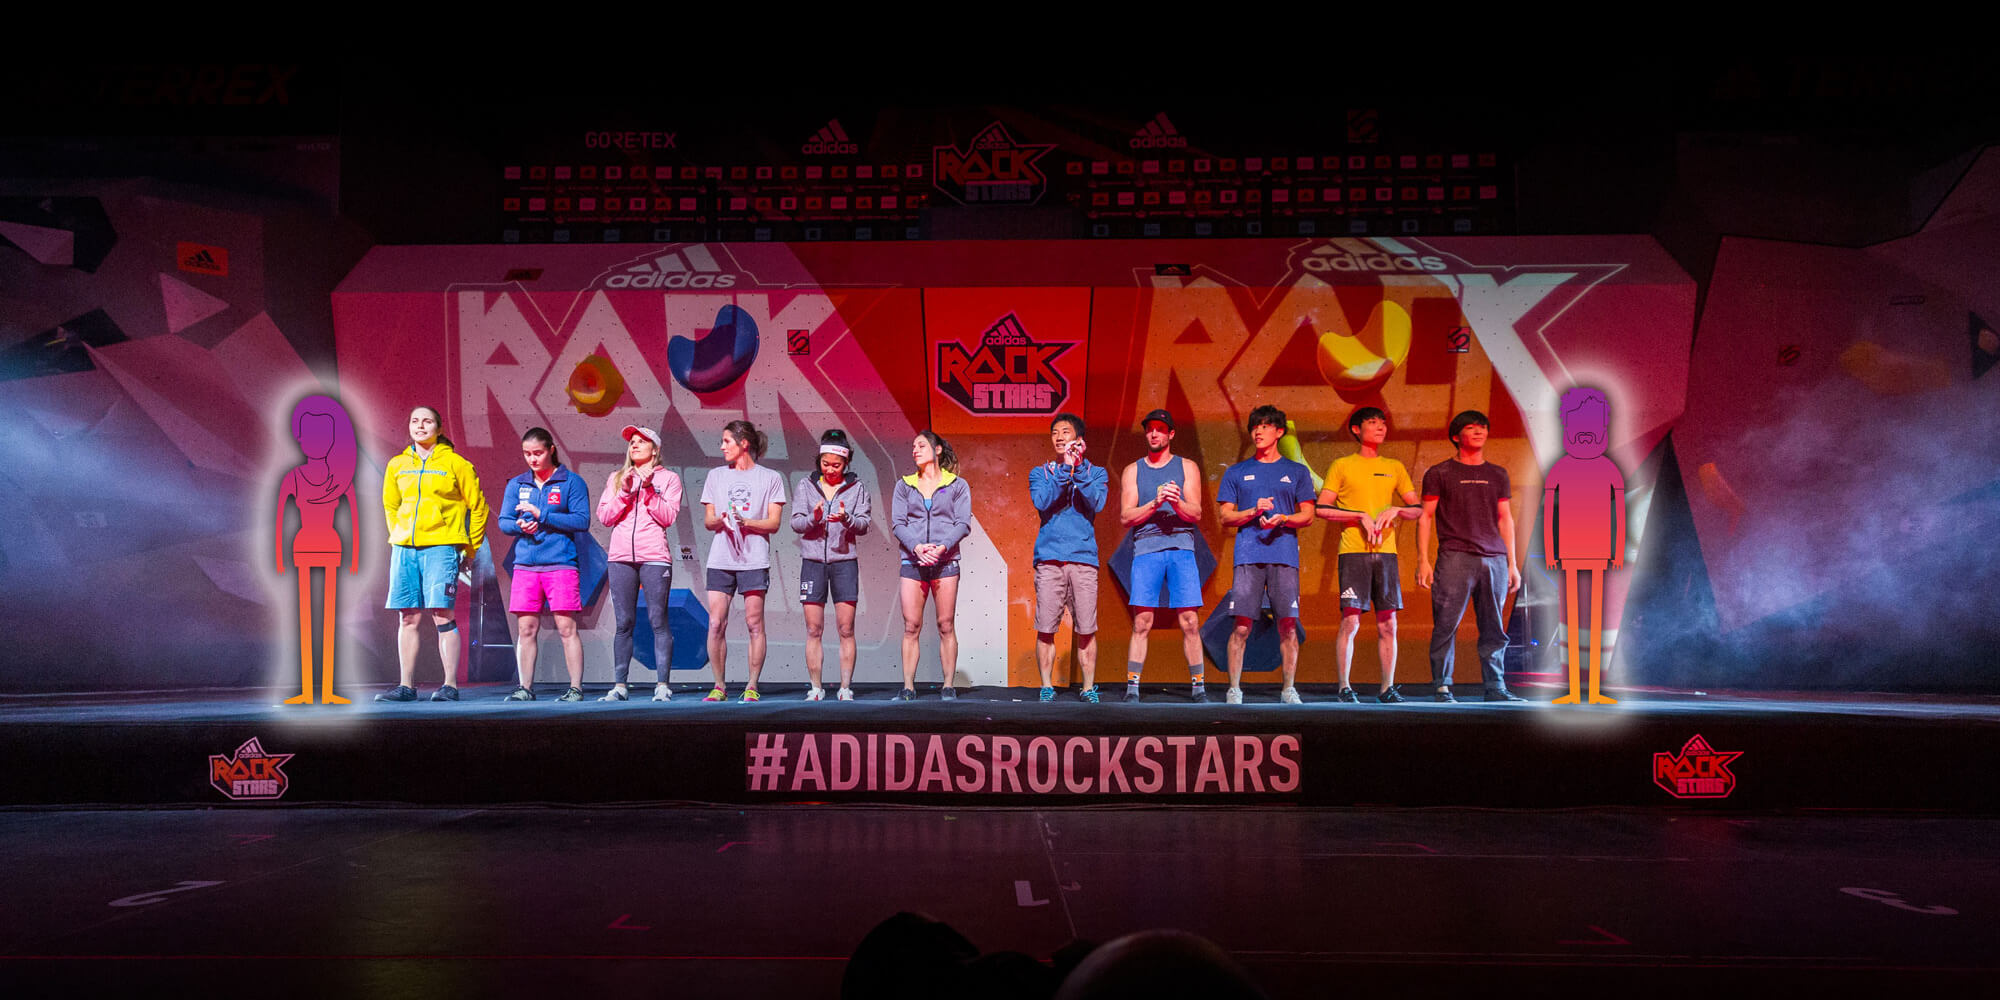 Adidas Rockstar athletes on stage